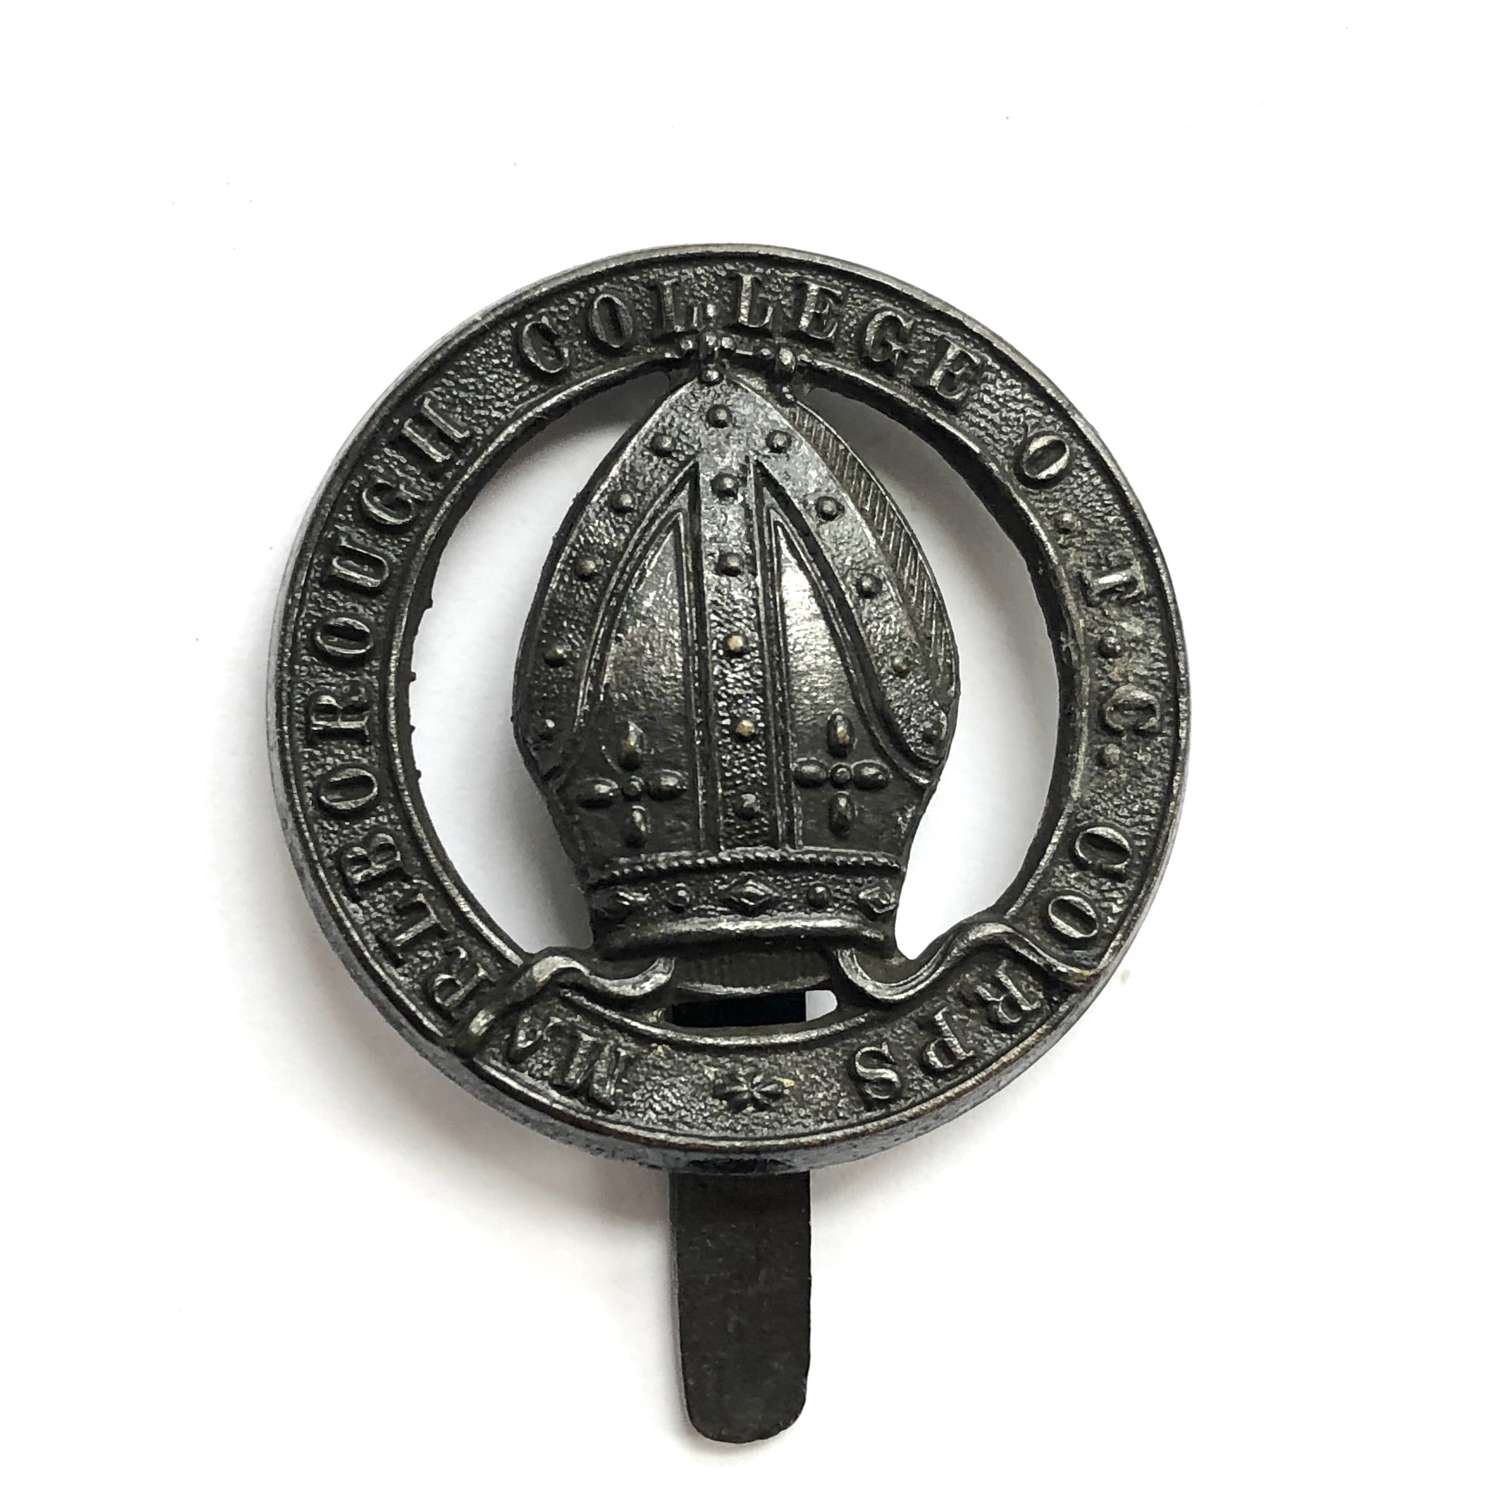 Marlborough College OTC Corps, Wiltshire post 1908 cap badge